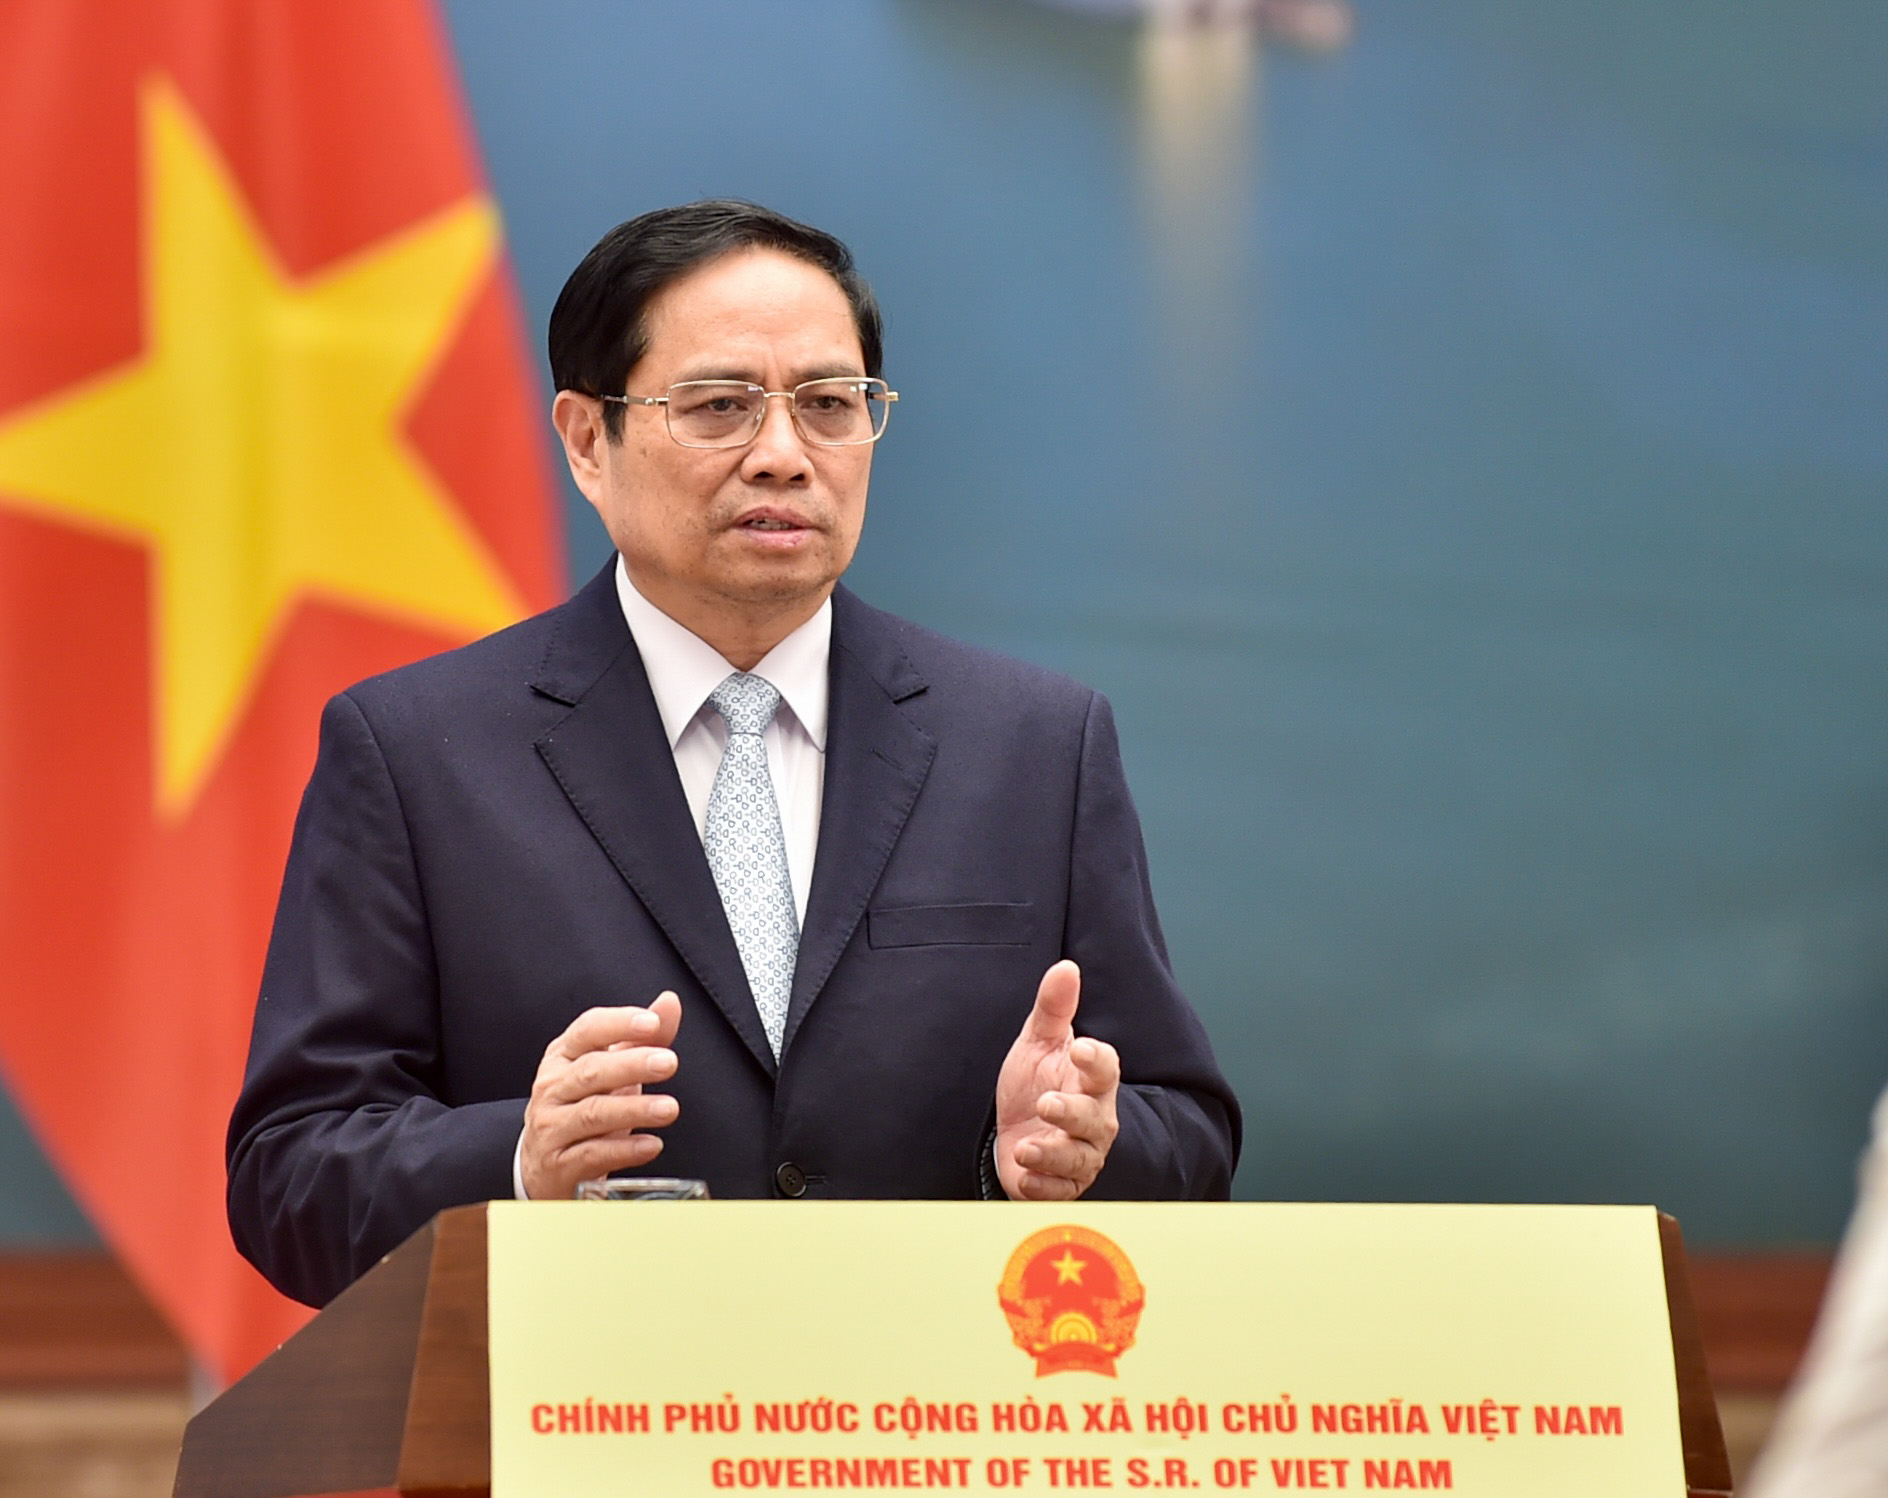 Thủ tướng: Việt Nam chú trọng phát triển các nguồn năng lượng tái tạo - Ảnh 1.